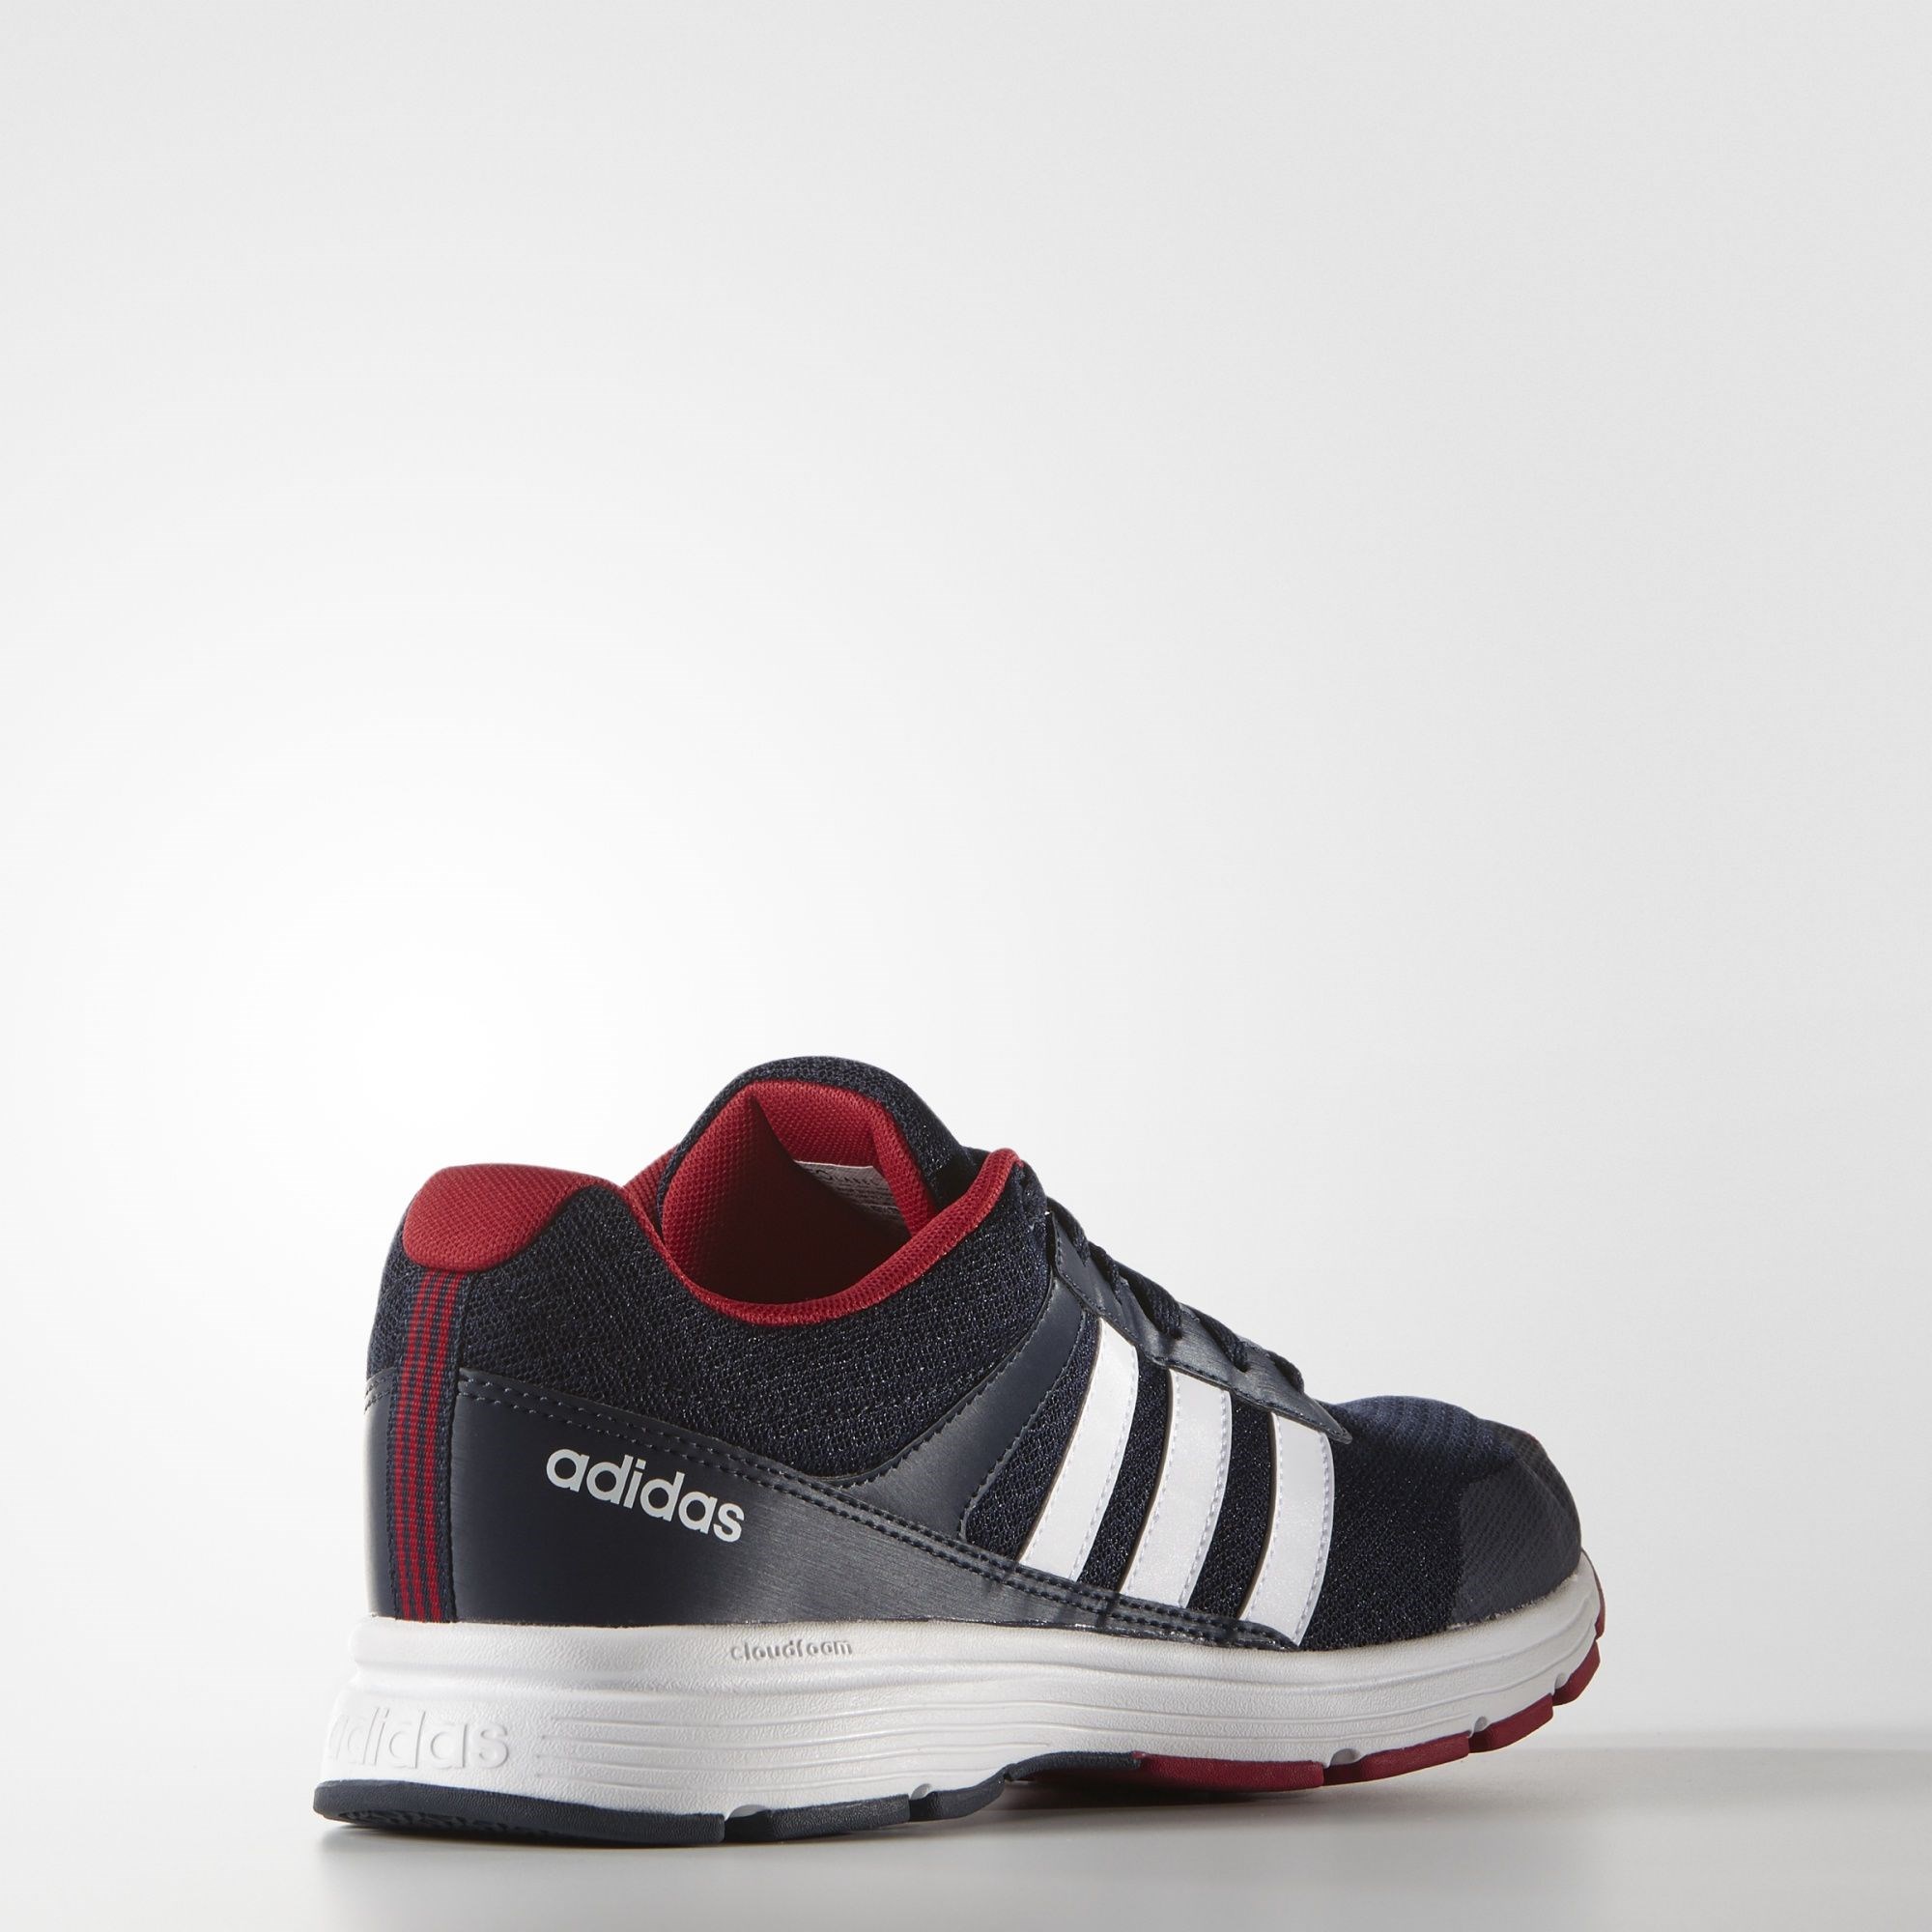 adidas Cloudfoam VS City Erkek Spor Ayakkabı Ürün kodu: AQ1345 | Etichet  Sport